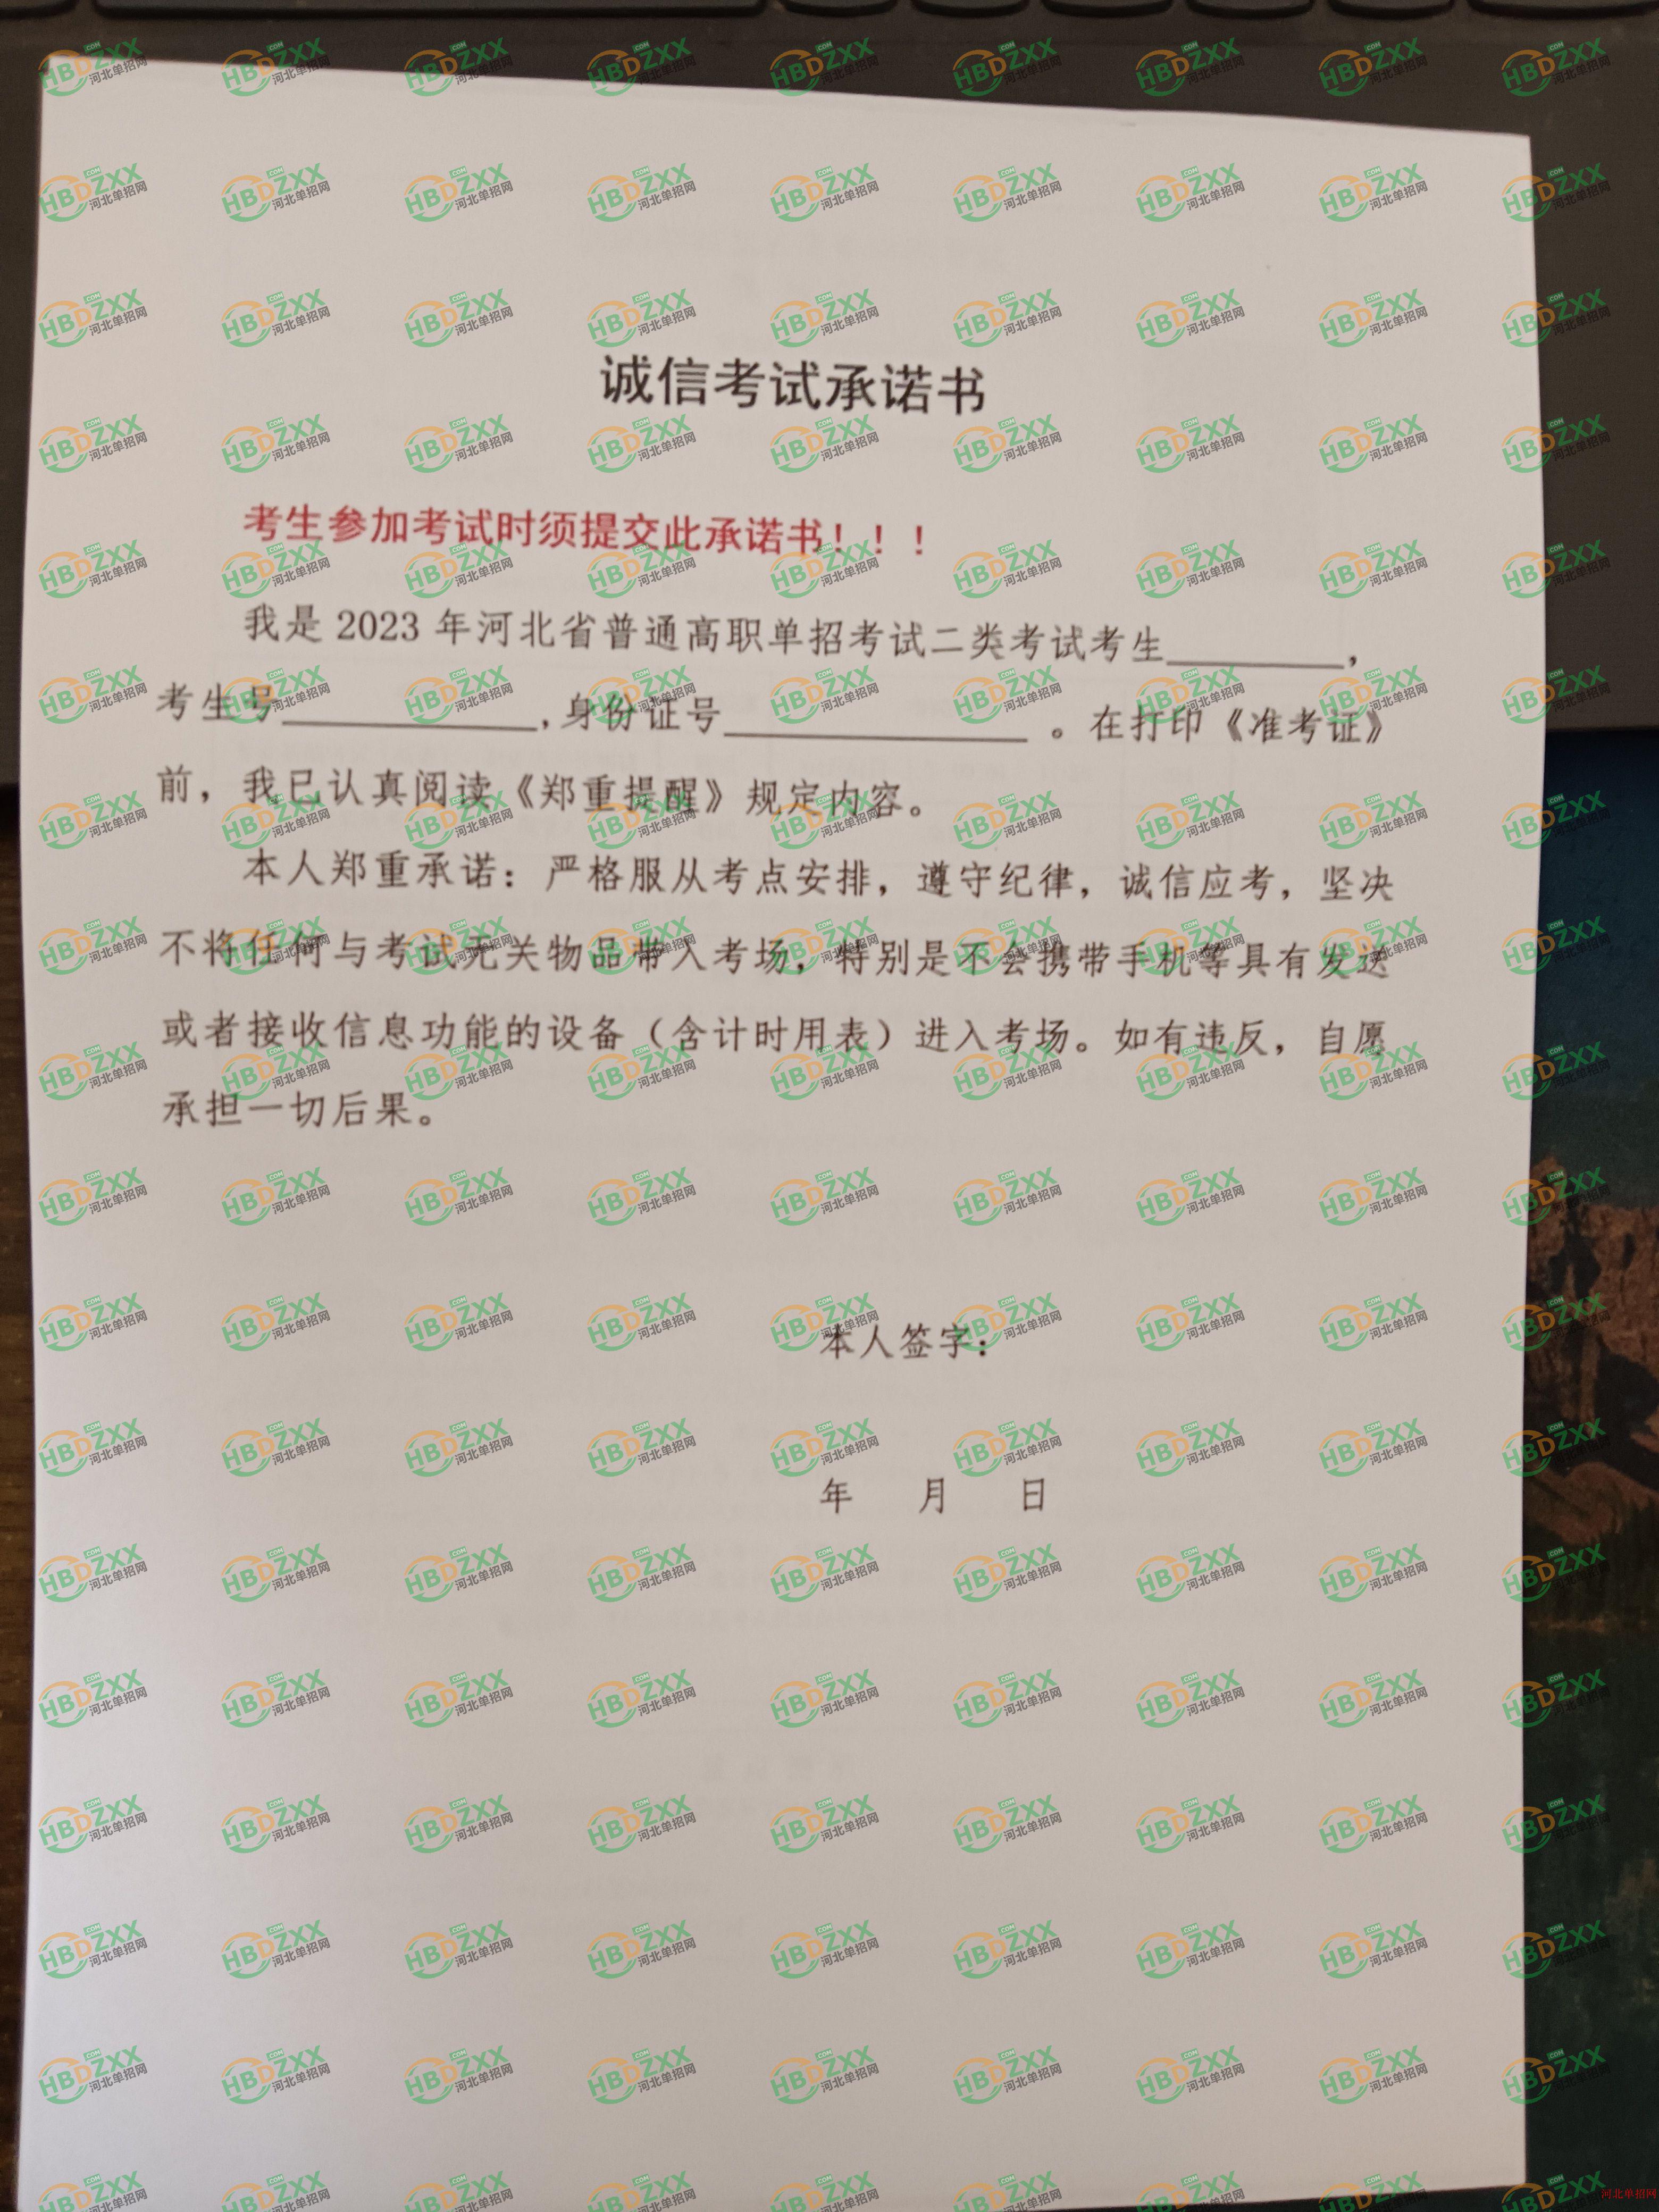 2023年河北省高职单招准考证打印流程图 图6